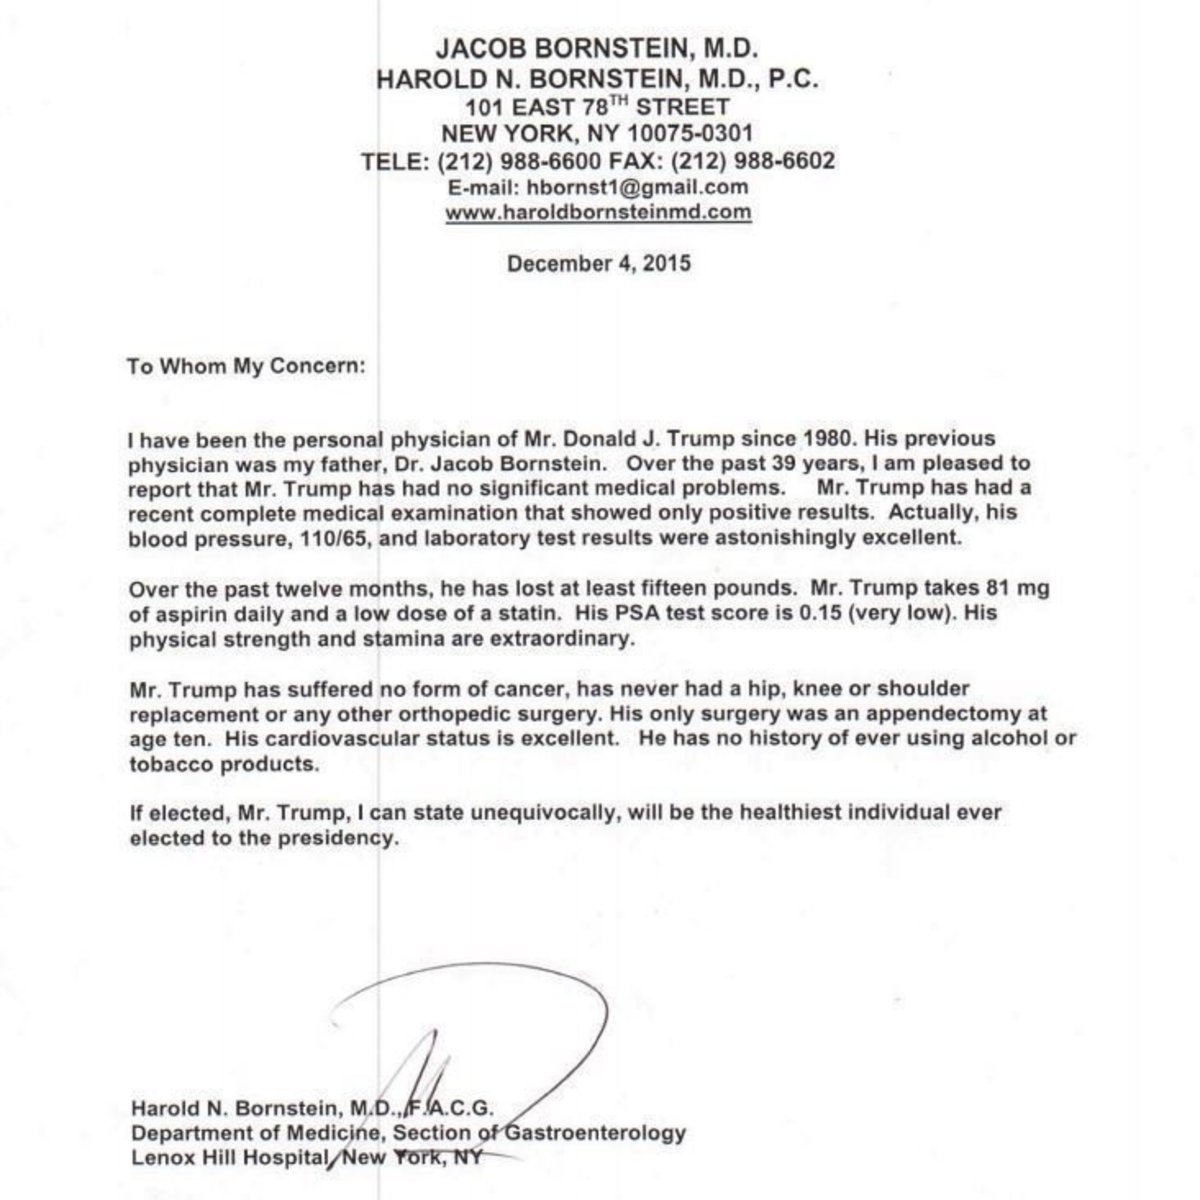 Dr. Harold Bornstein's fake letter